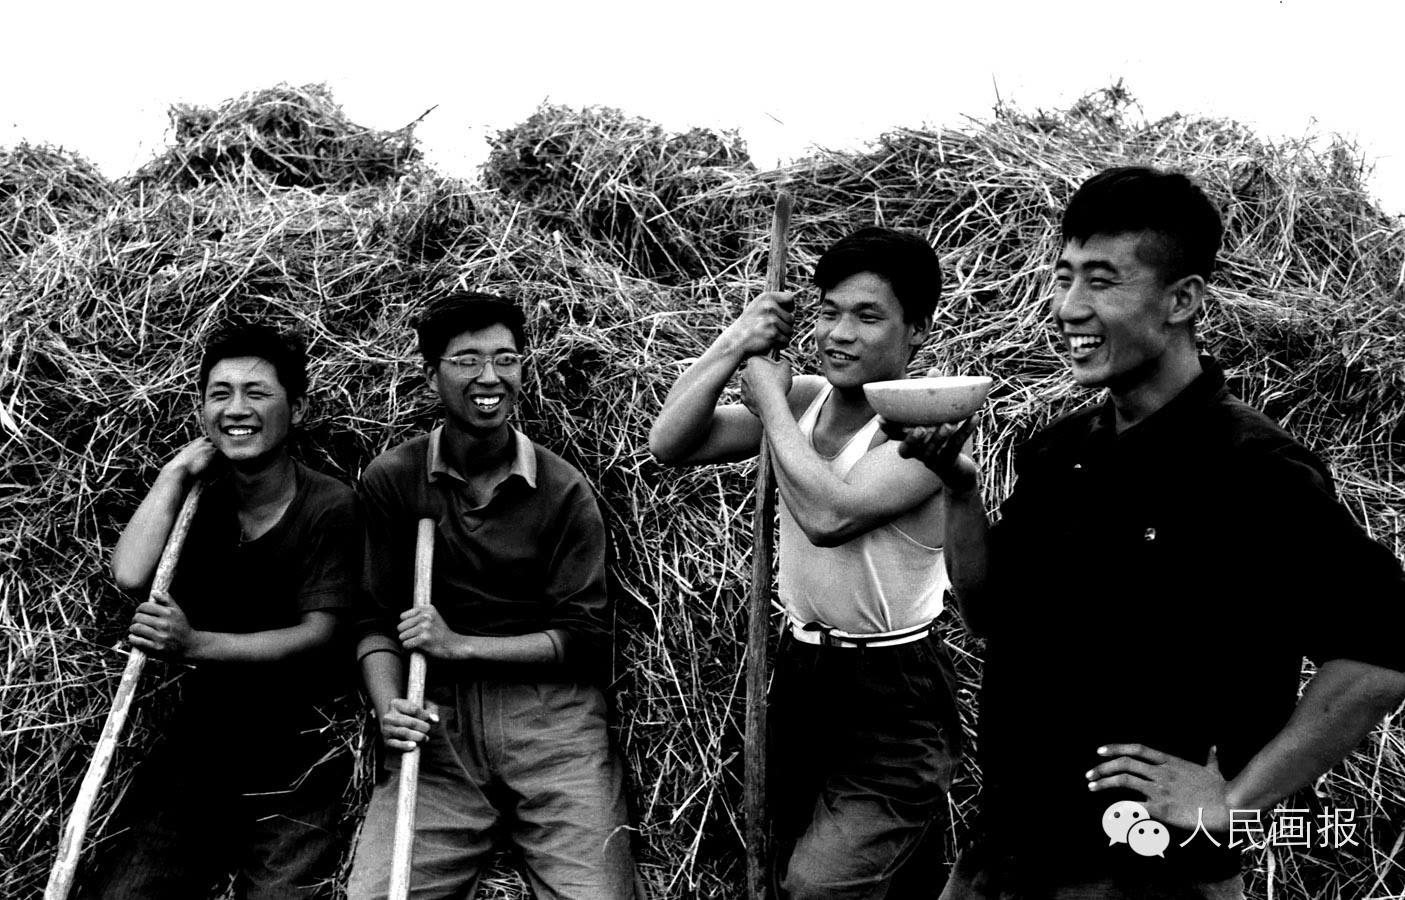 经过垦荒生活的锻炼,农场里的北京知青已成为劳动能手